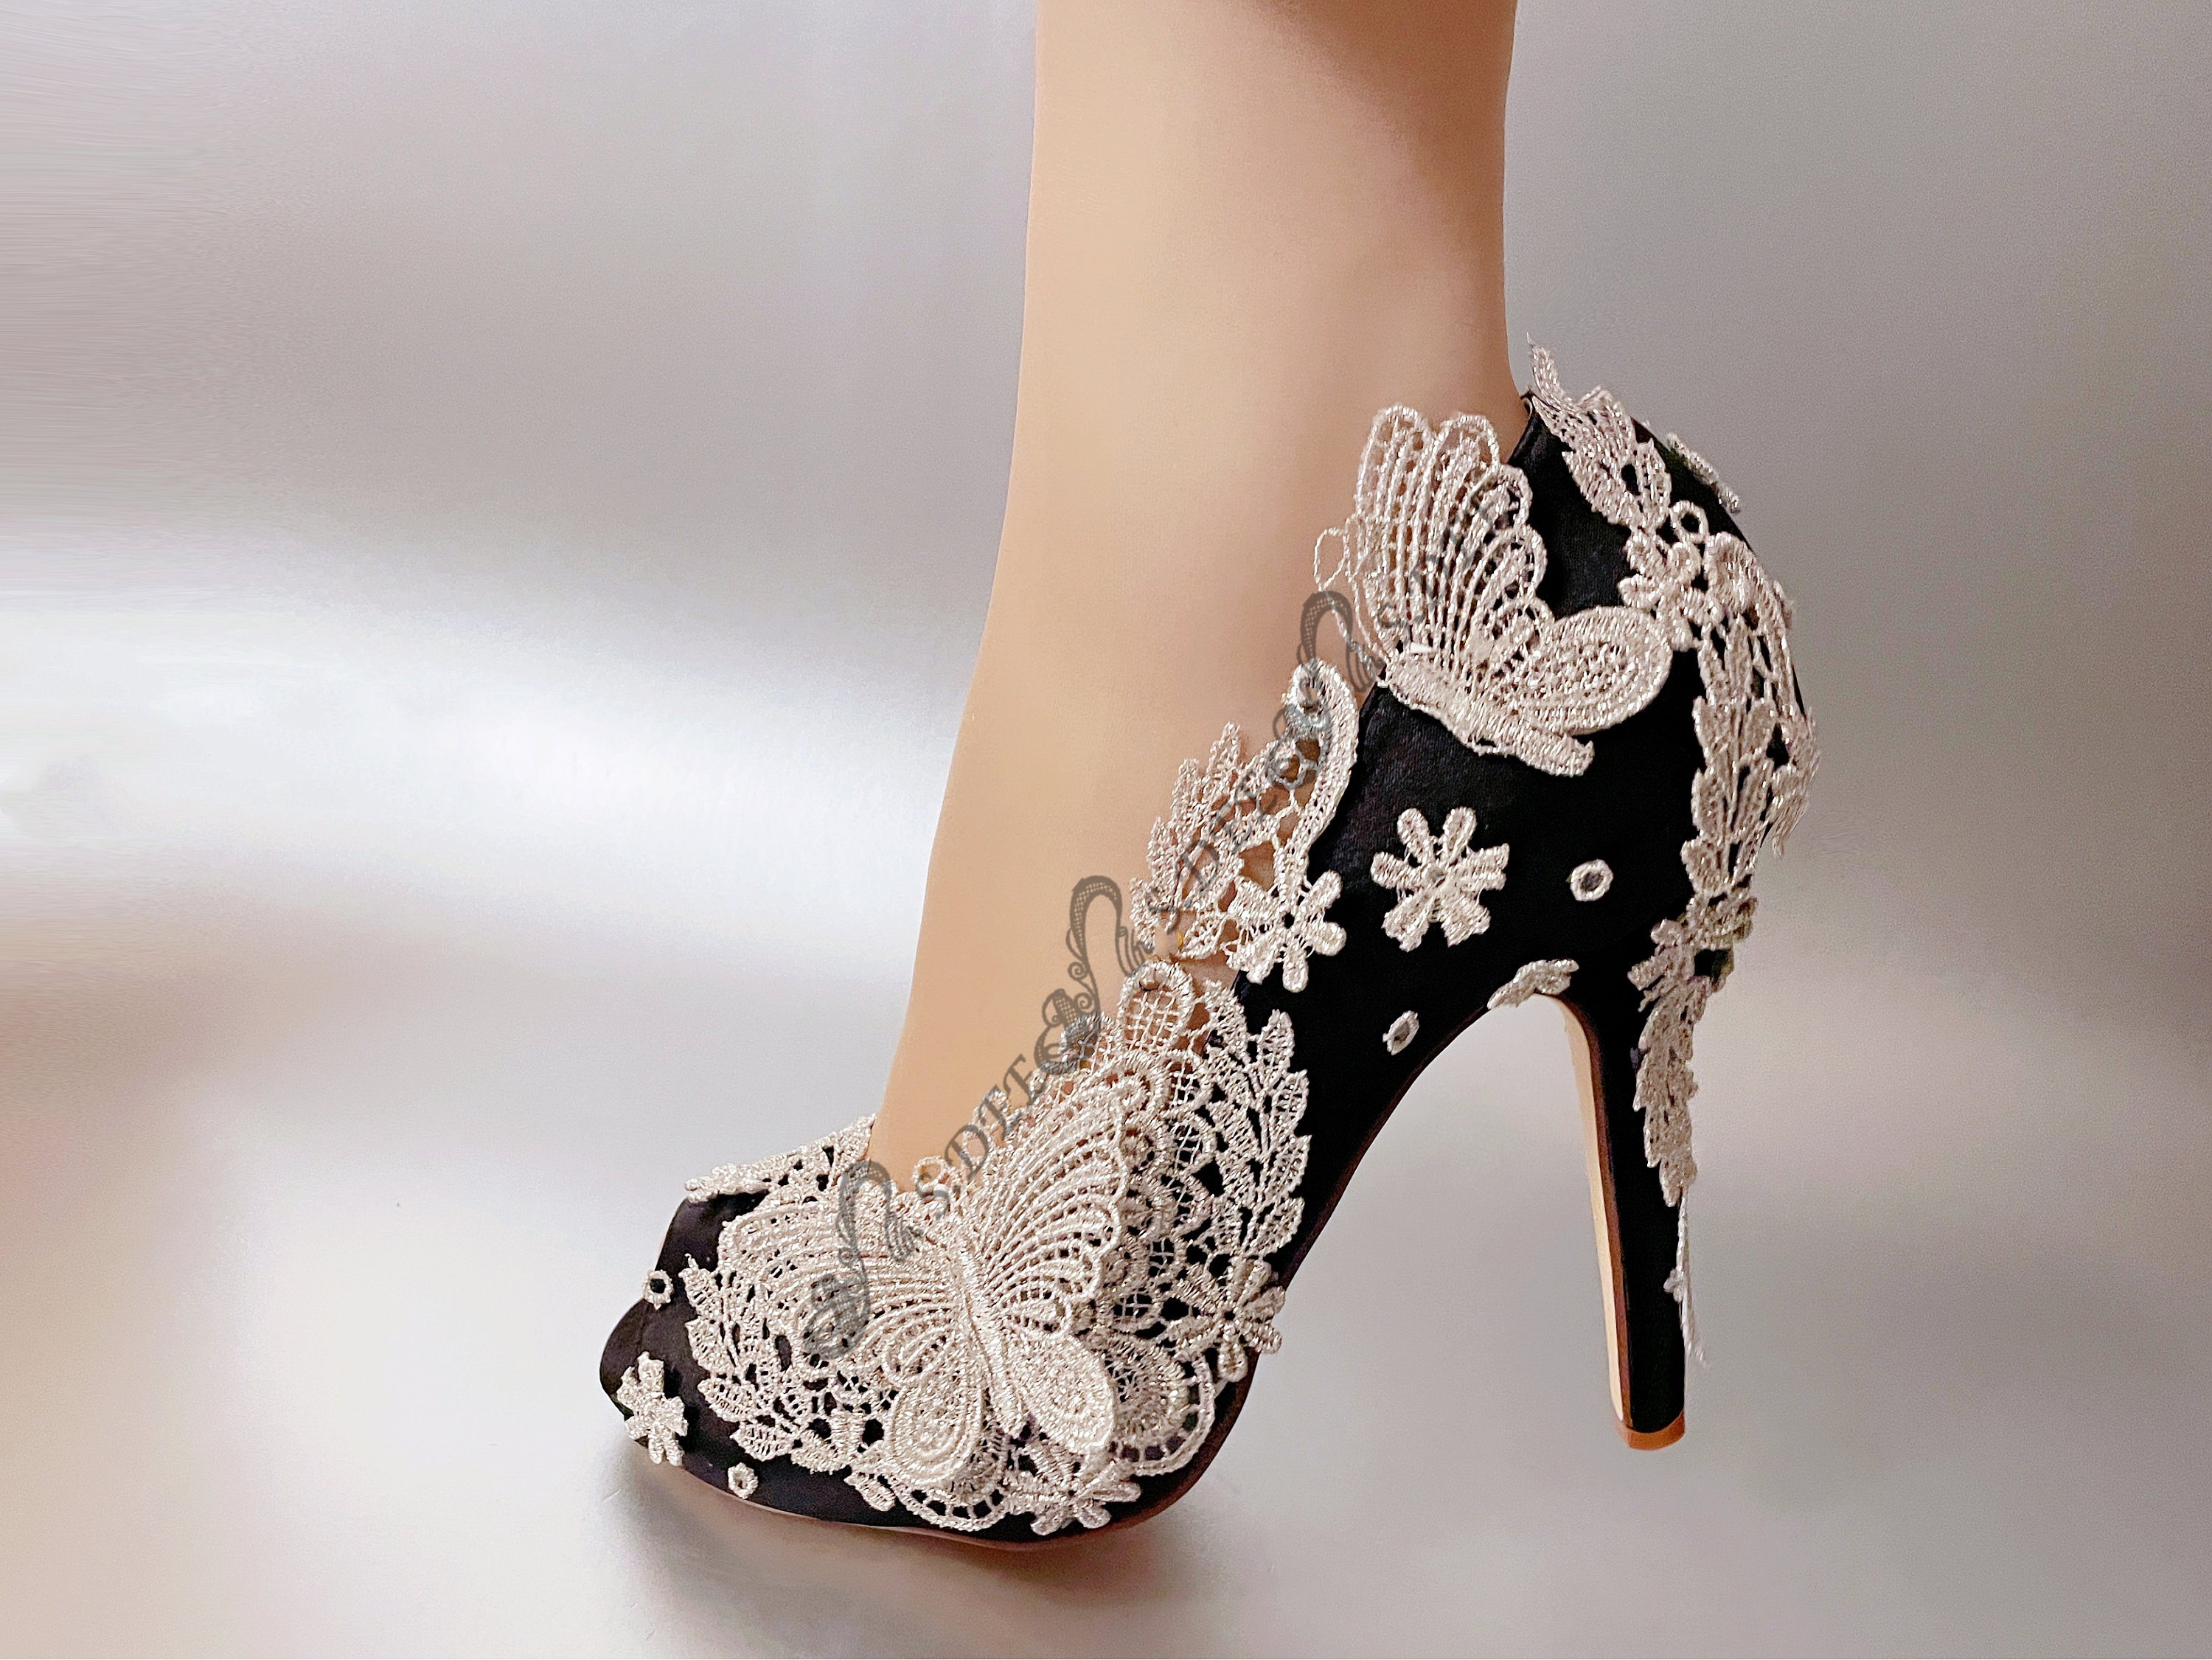 su.cheny- 3 4” heel white ivory satin lace ribbon open toe Wedding Bridal  shoes